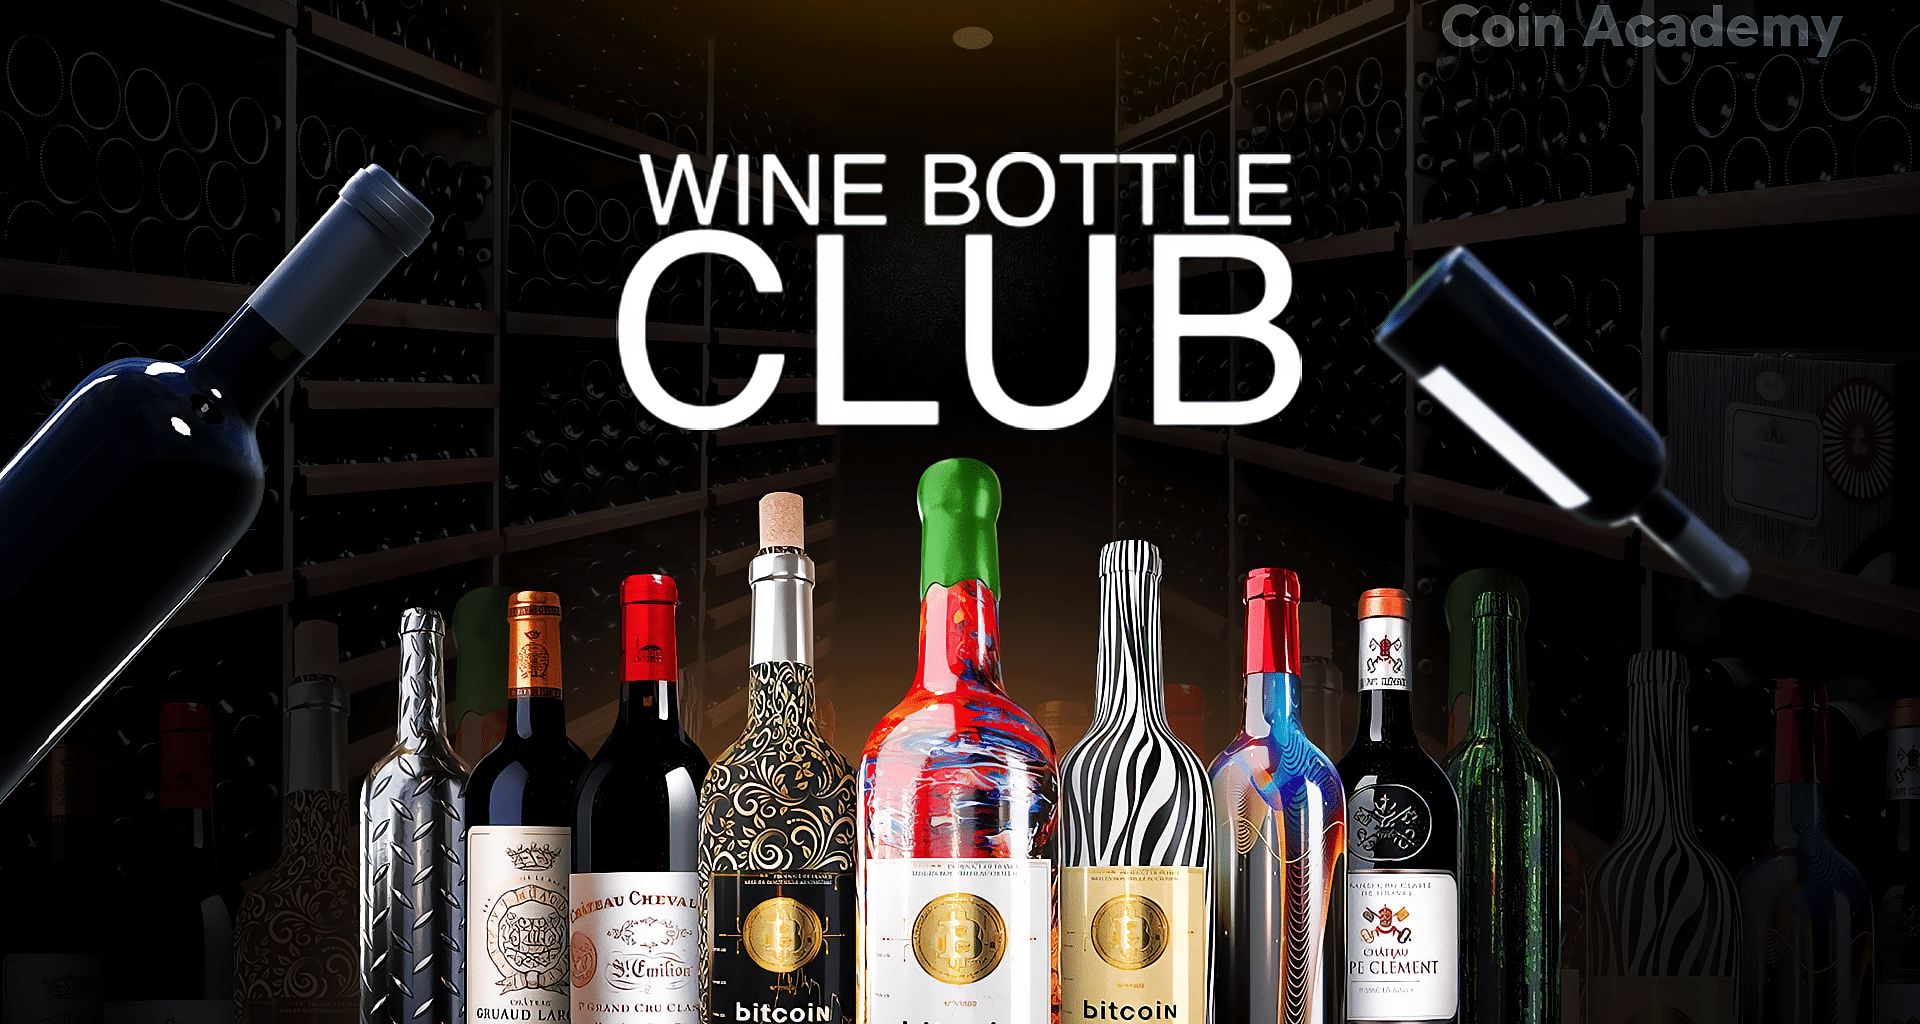 Wine bottle club